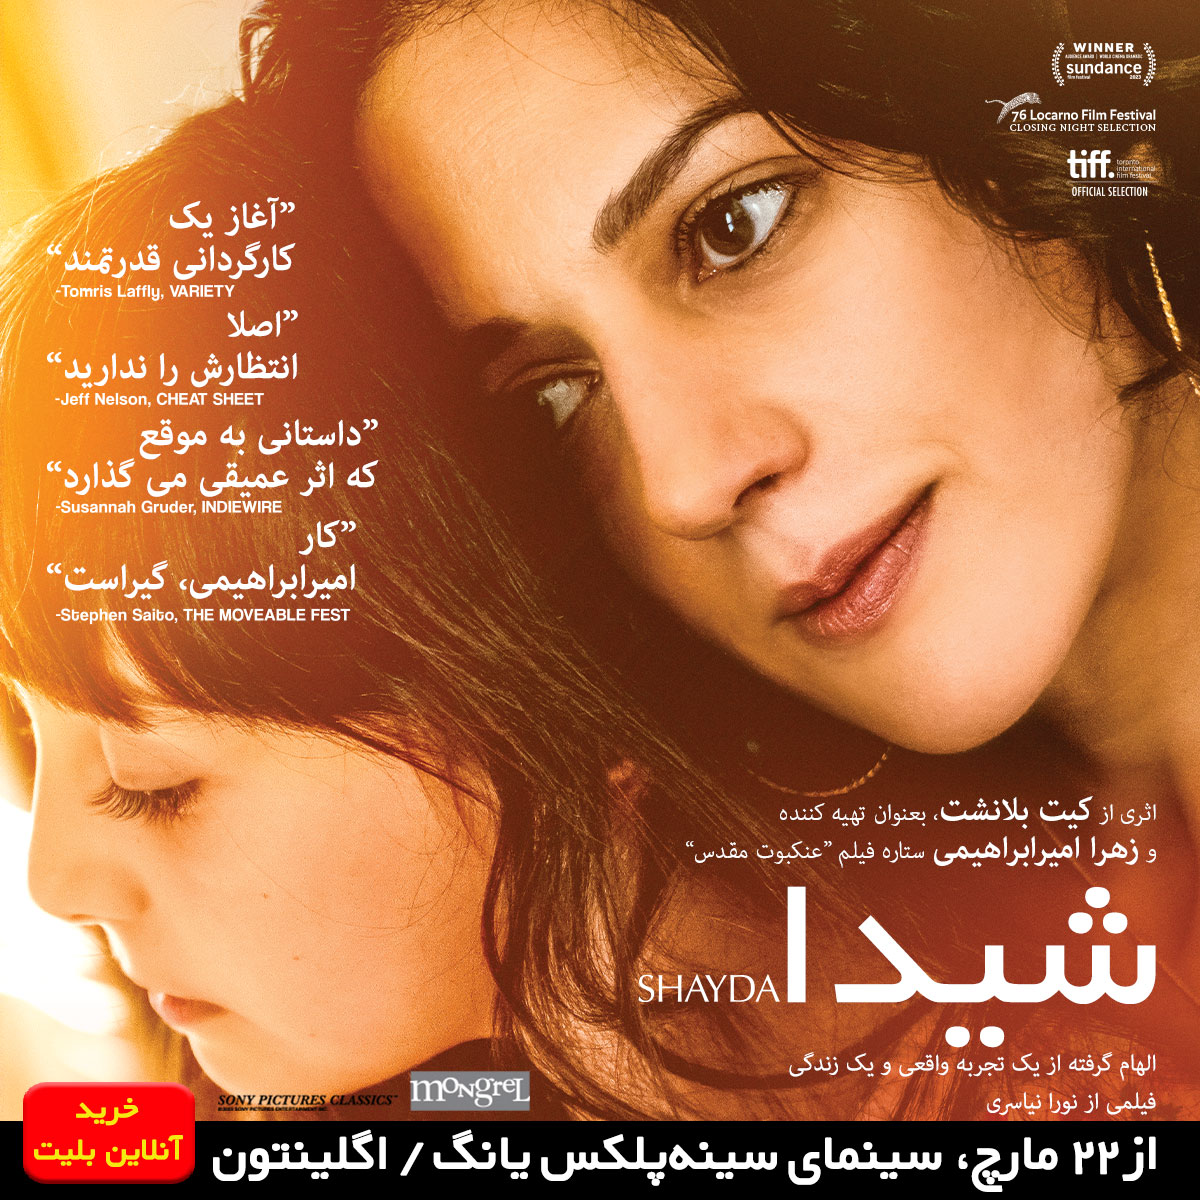 Shayda شیدا Film-Movie-Persian-Iranian-Shayda-Canada-AmirEbrahimi-Toronto